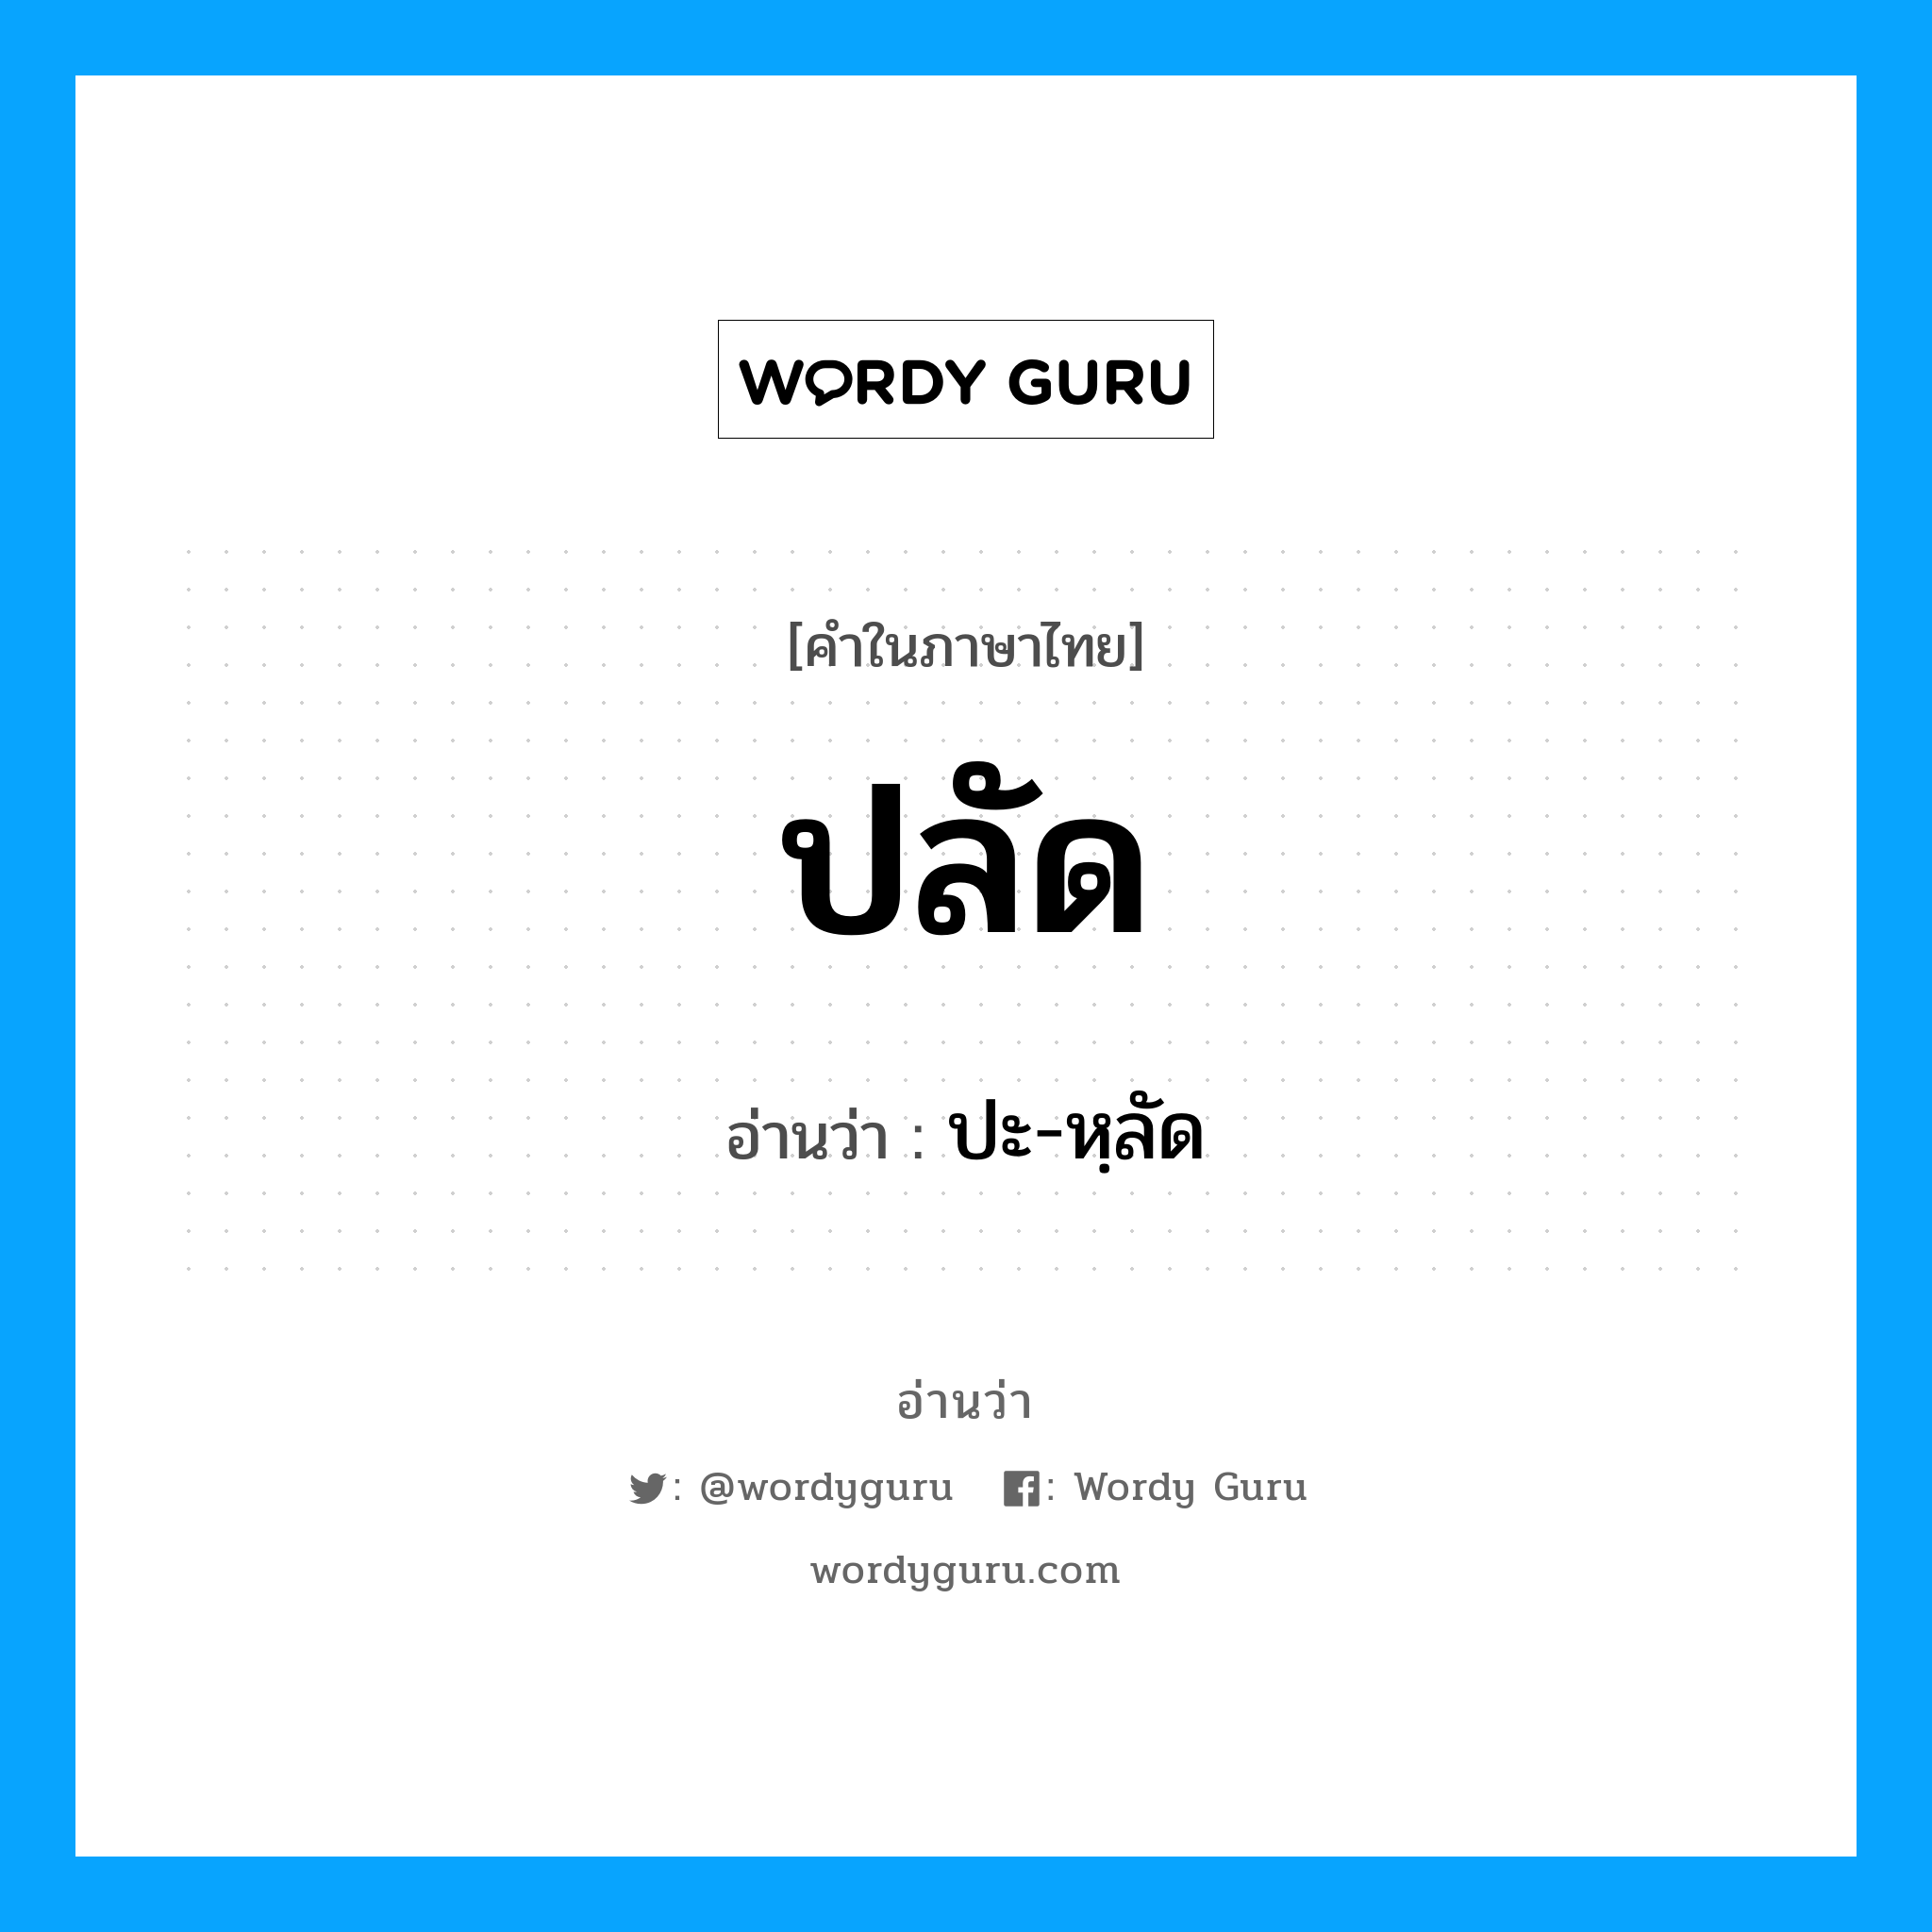 ปะ-หฺลัด เป็นคำอ่านของคำไหน?, คำในภาษาไทย ปะ-หฺลัด อ่านว่า ปลัด